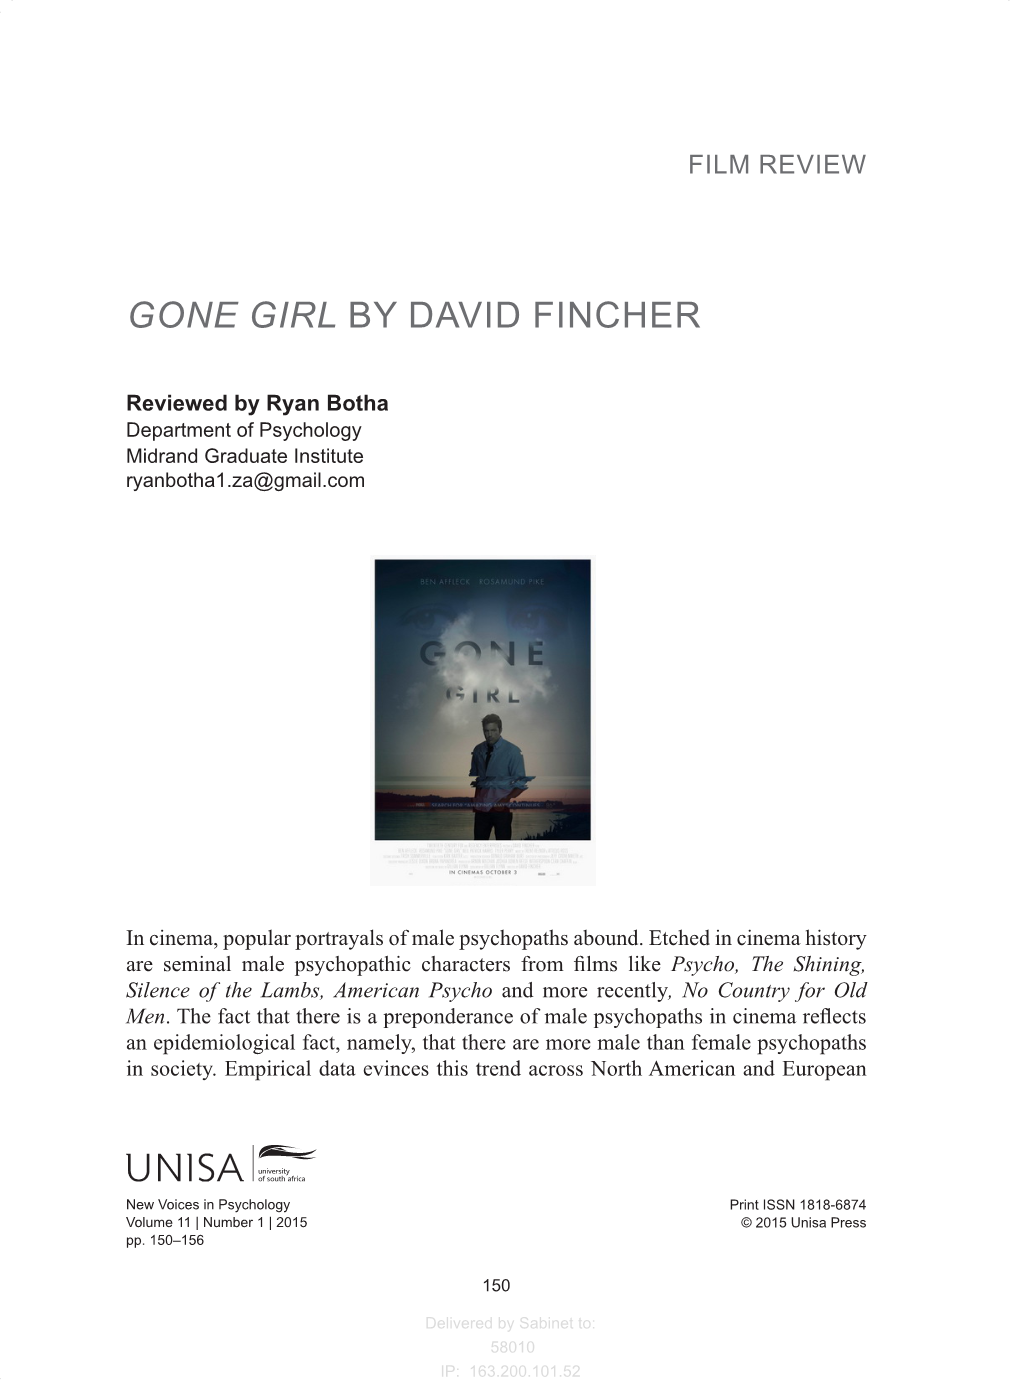 Gone Girl by David Fincher